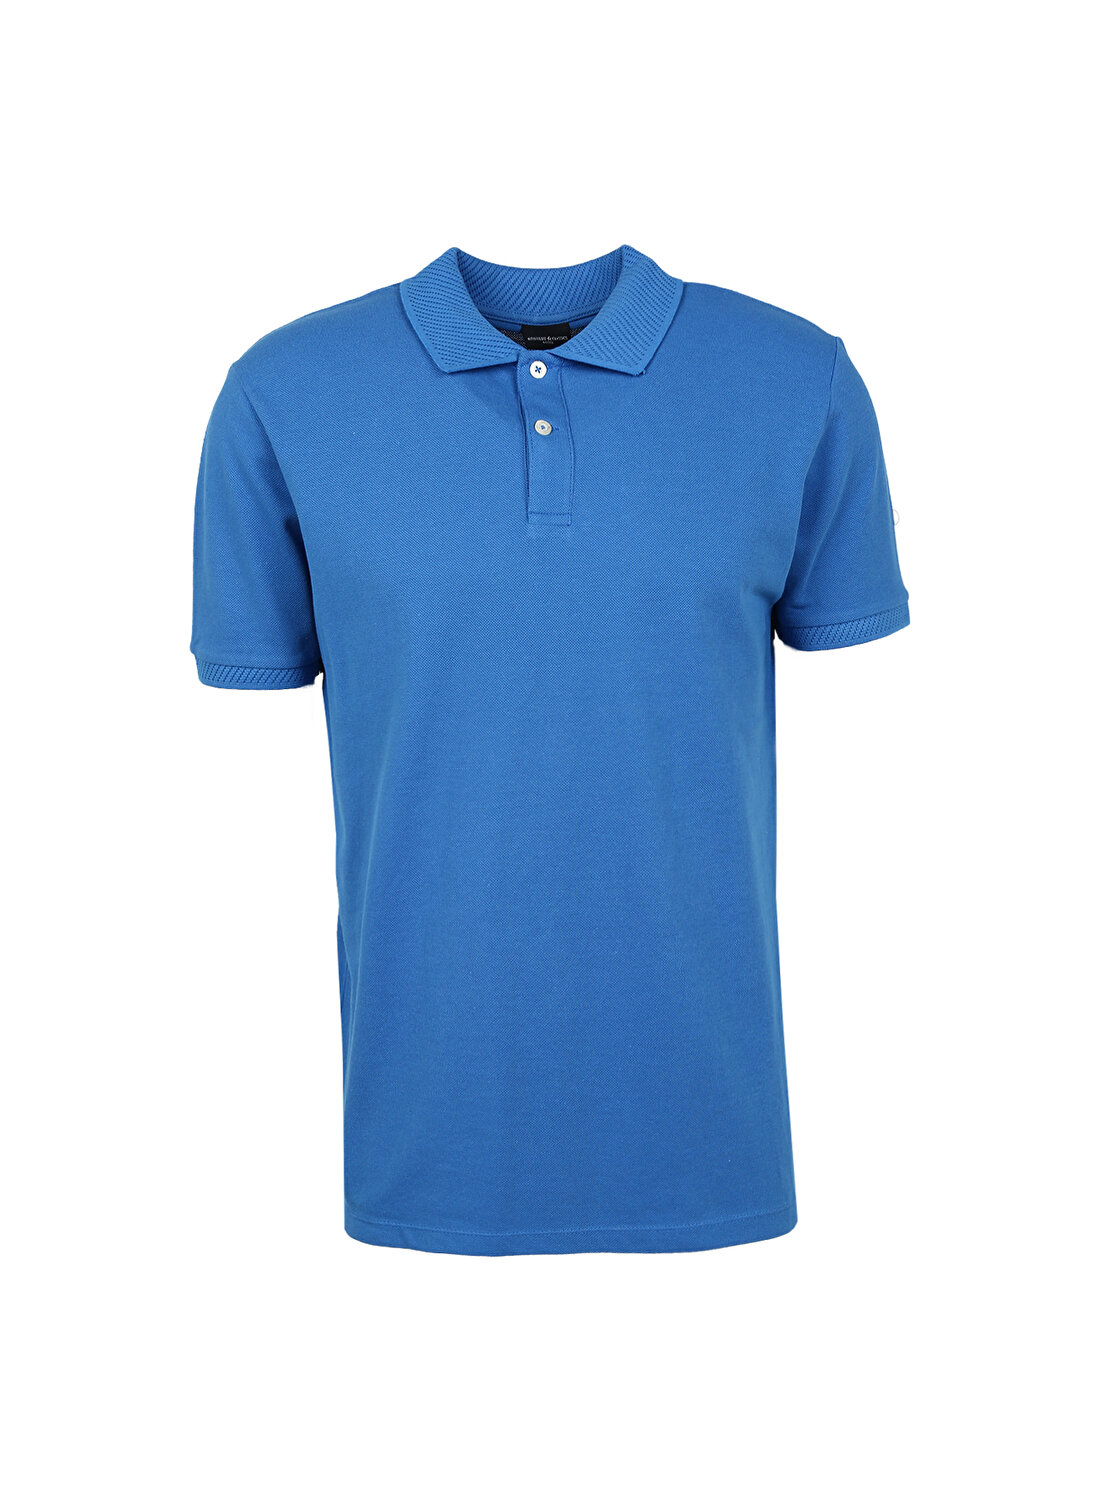 Altınyıldız Classics Polo Yaka Mavi Erkek T-Shirt 4A9000000001